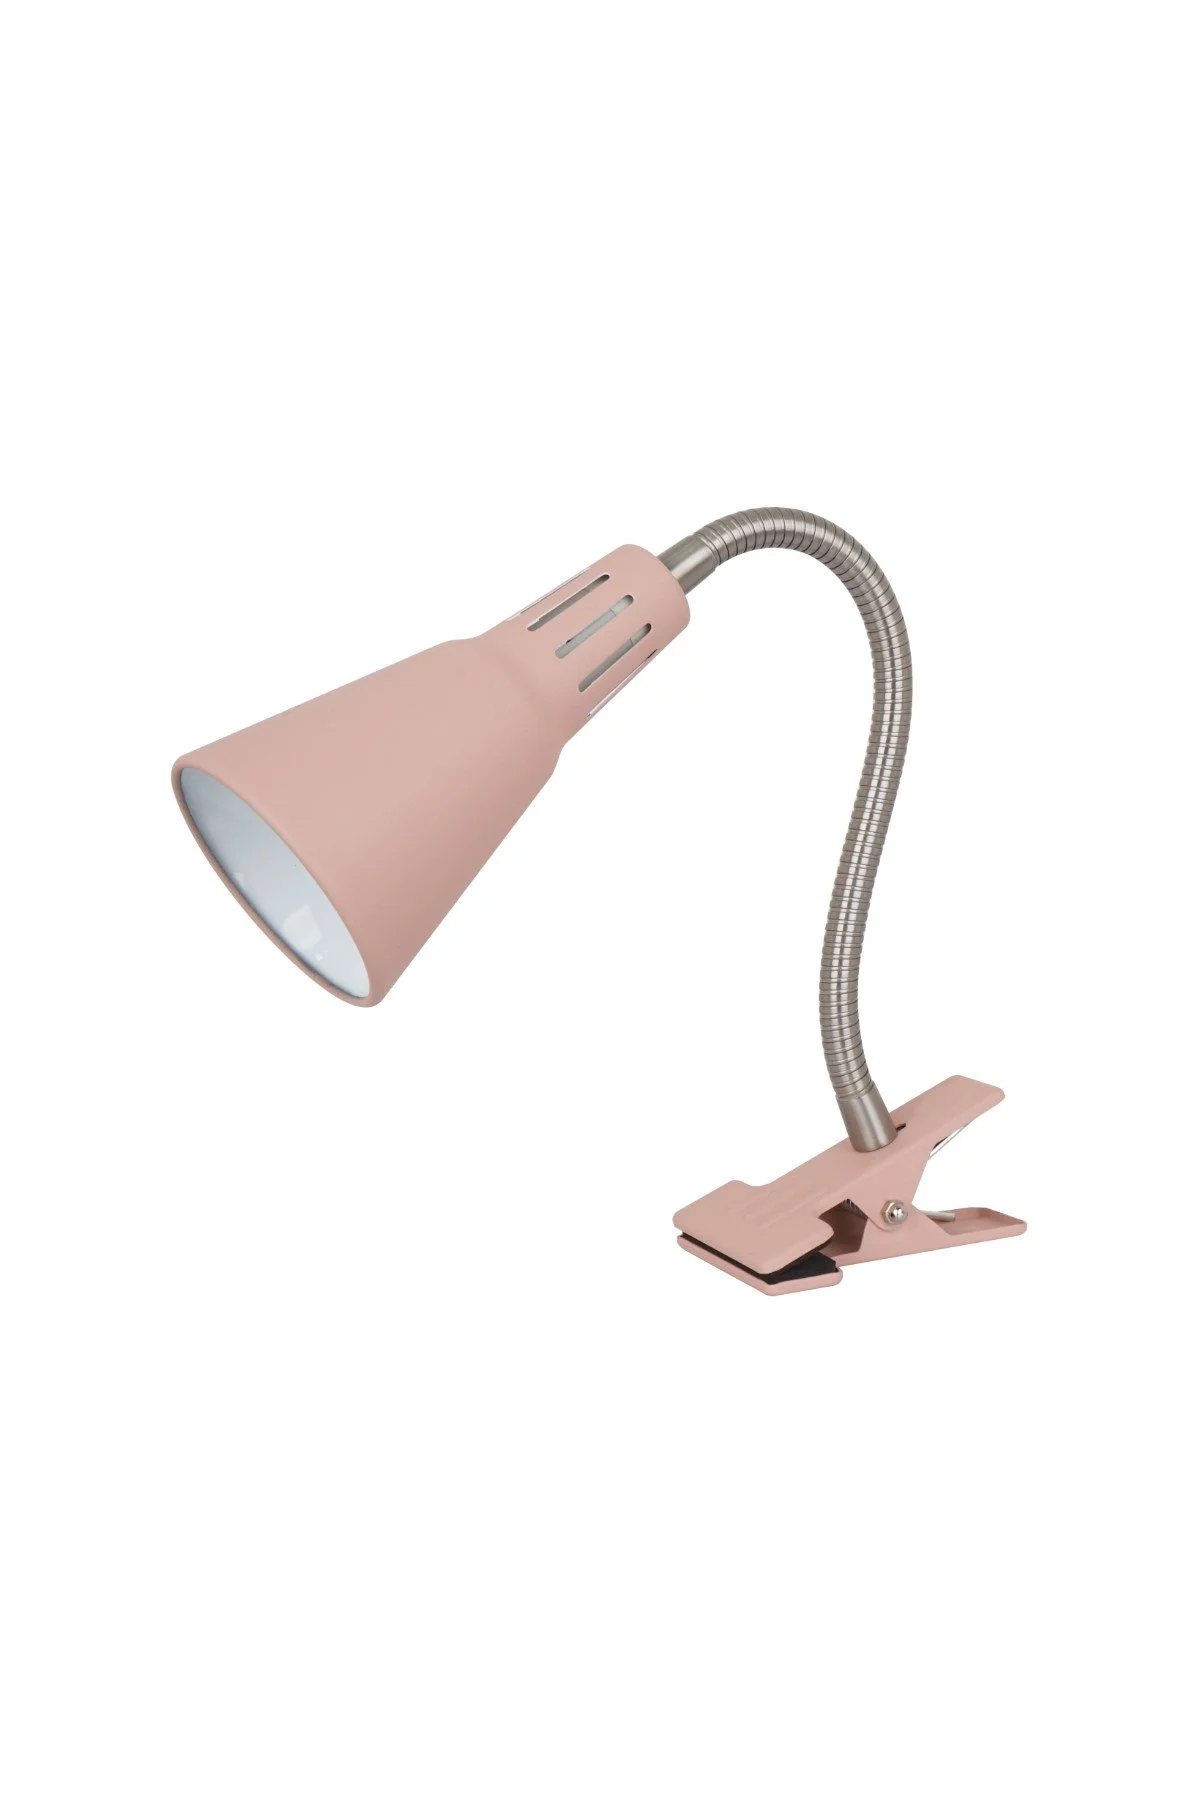   
                        Настільна лампа LAGUNA LIGHTING (Україна) 25614    
                         у стилі модерн.  
                        Тип джерела світла: cвітлодіодні led, енергозберігаючі, розжарювання.                                                 Кольори плафонів і підвісок: рожевий.                         Матеріал: метал.                          фото 1